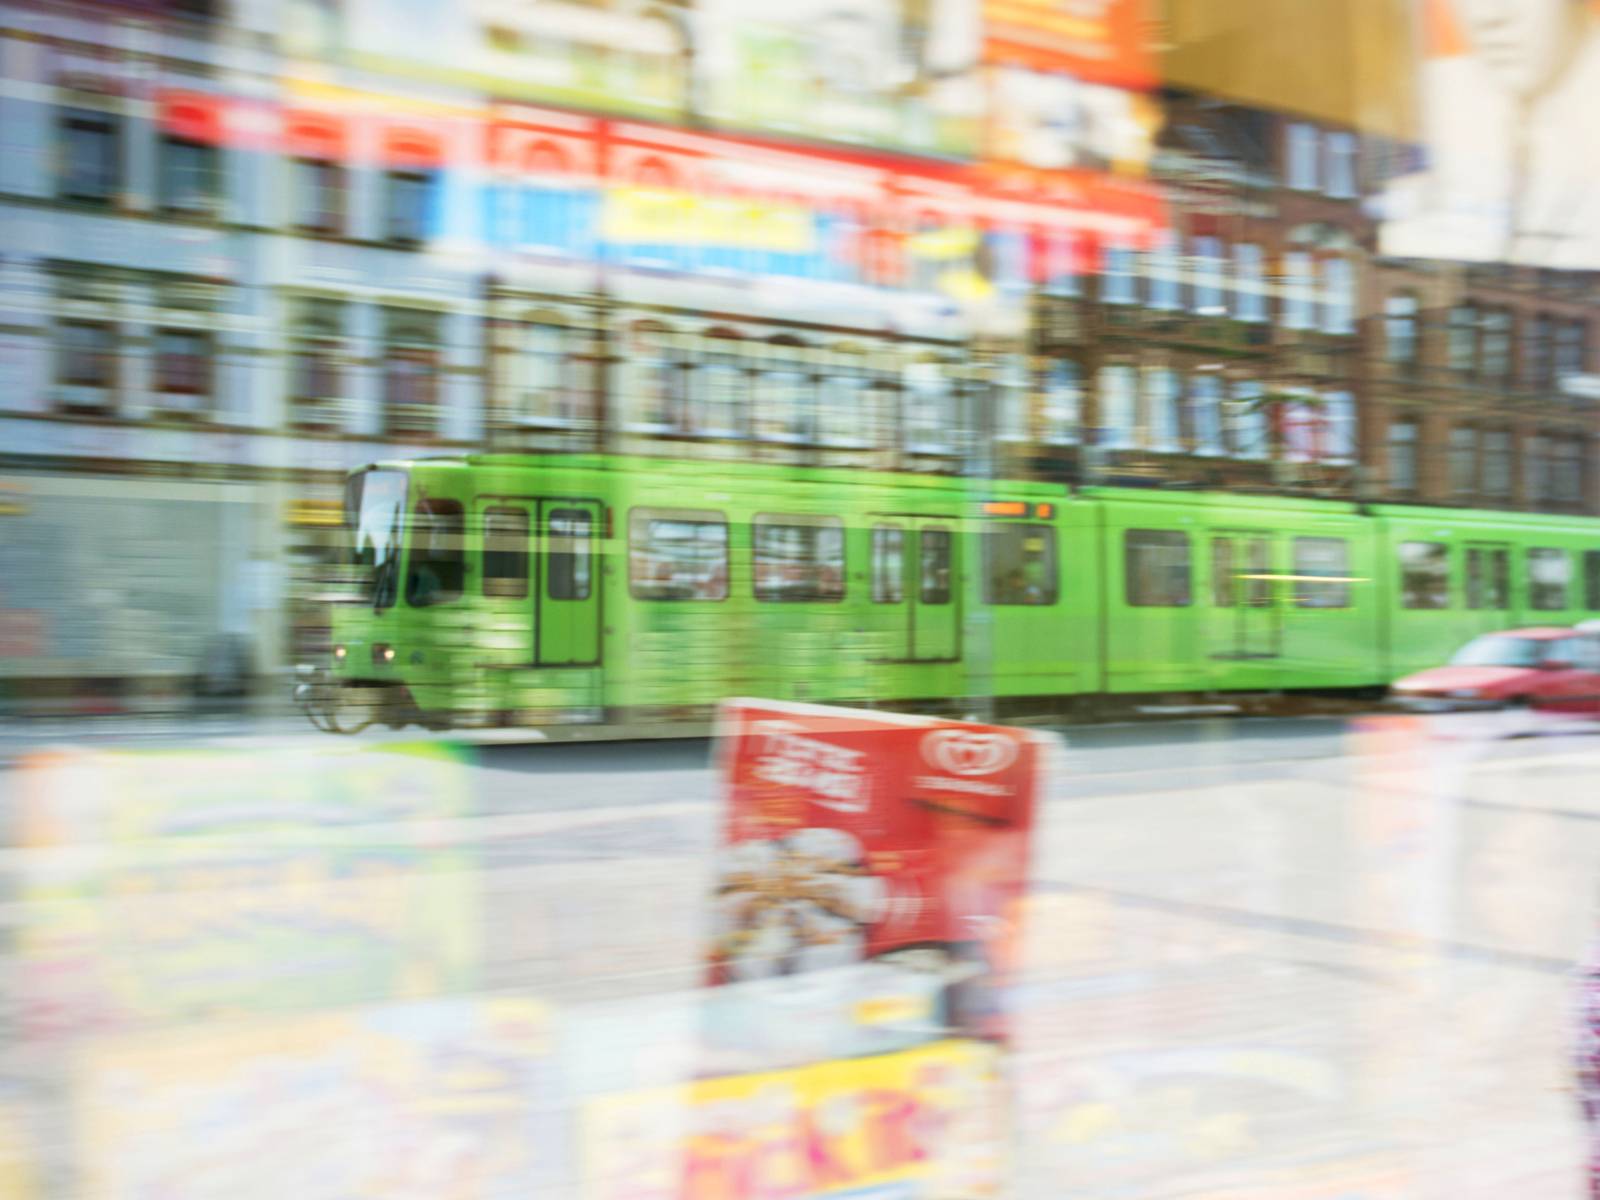 Stadtbahn gespiegelt im Schaufenster von einem Kiosk